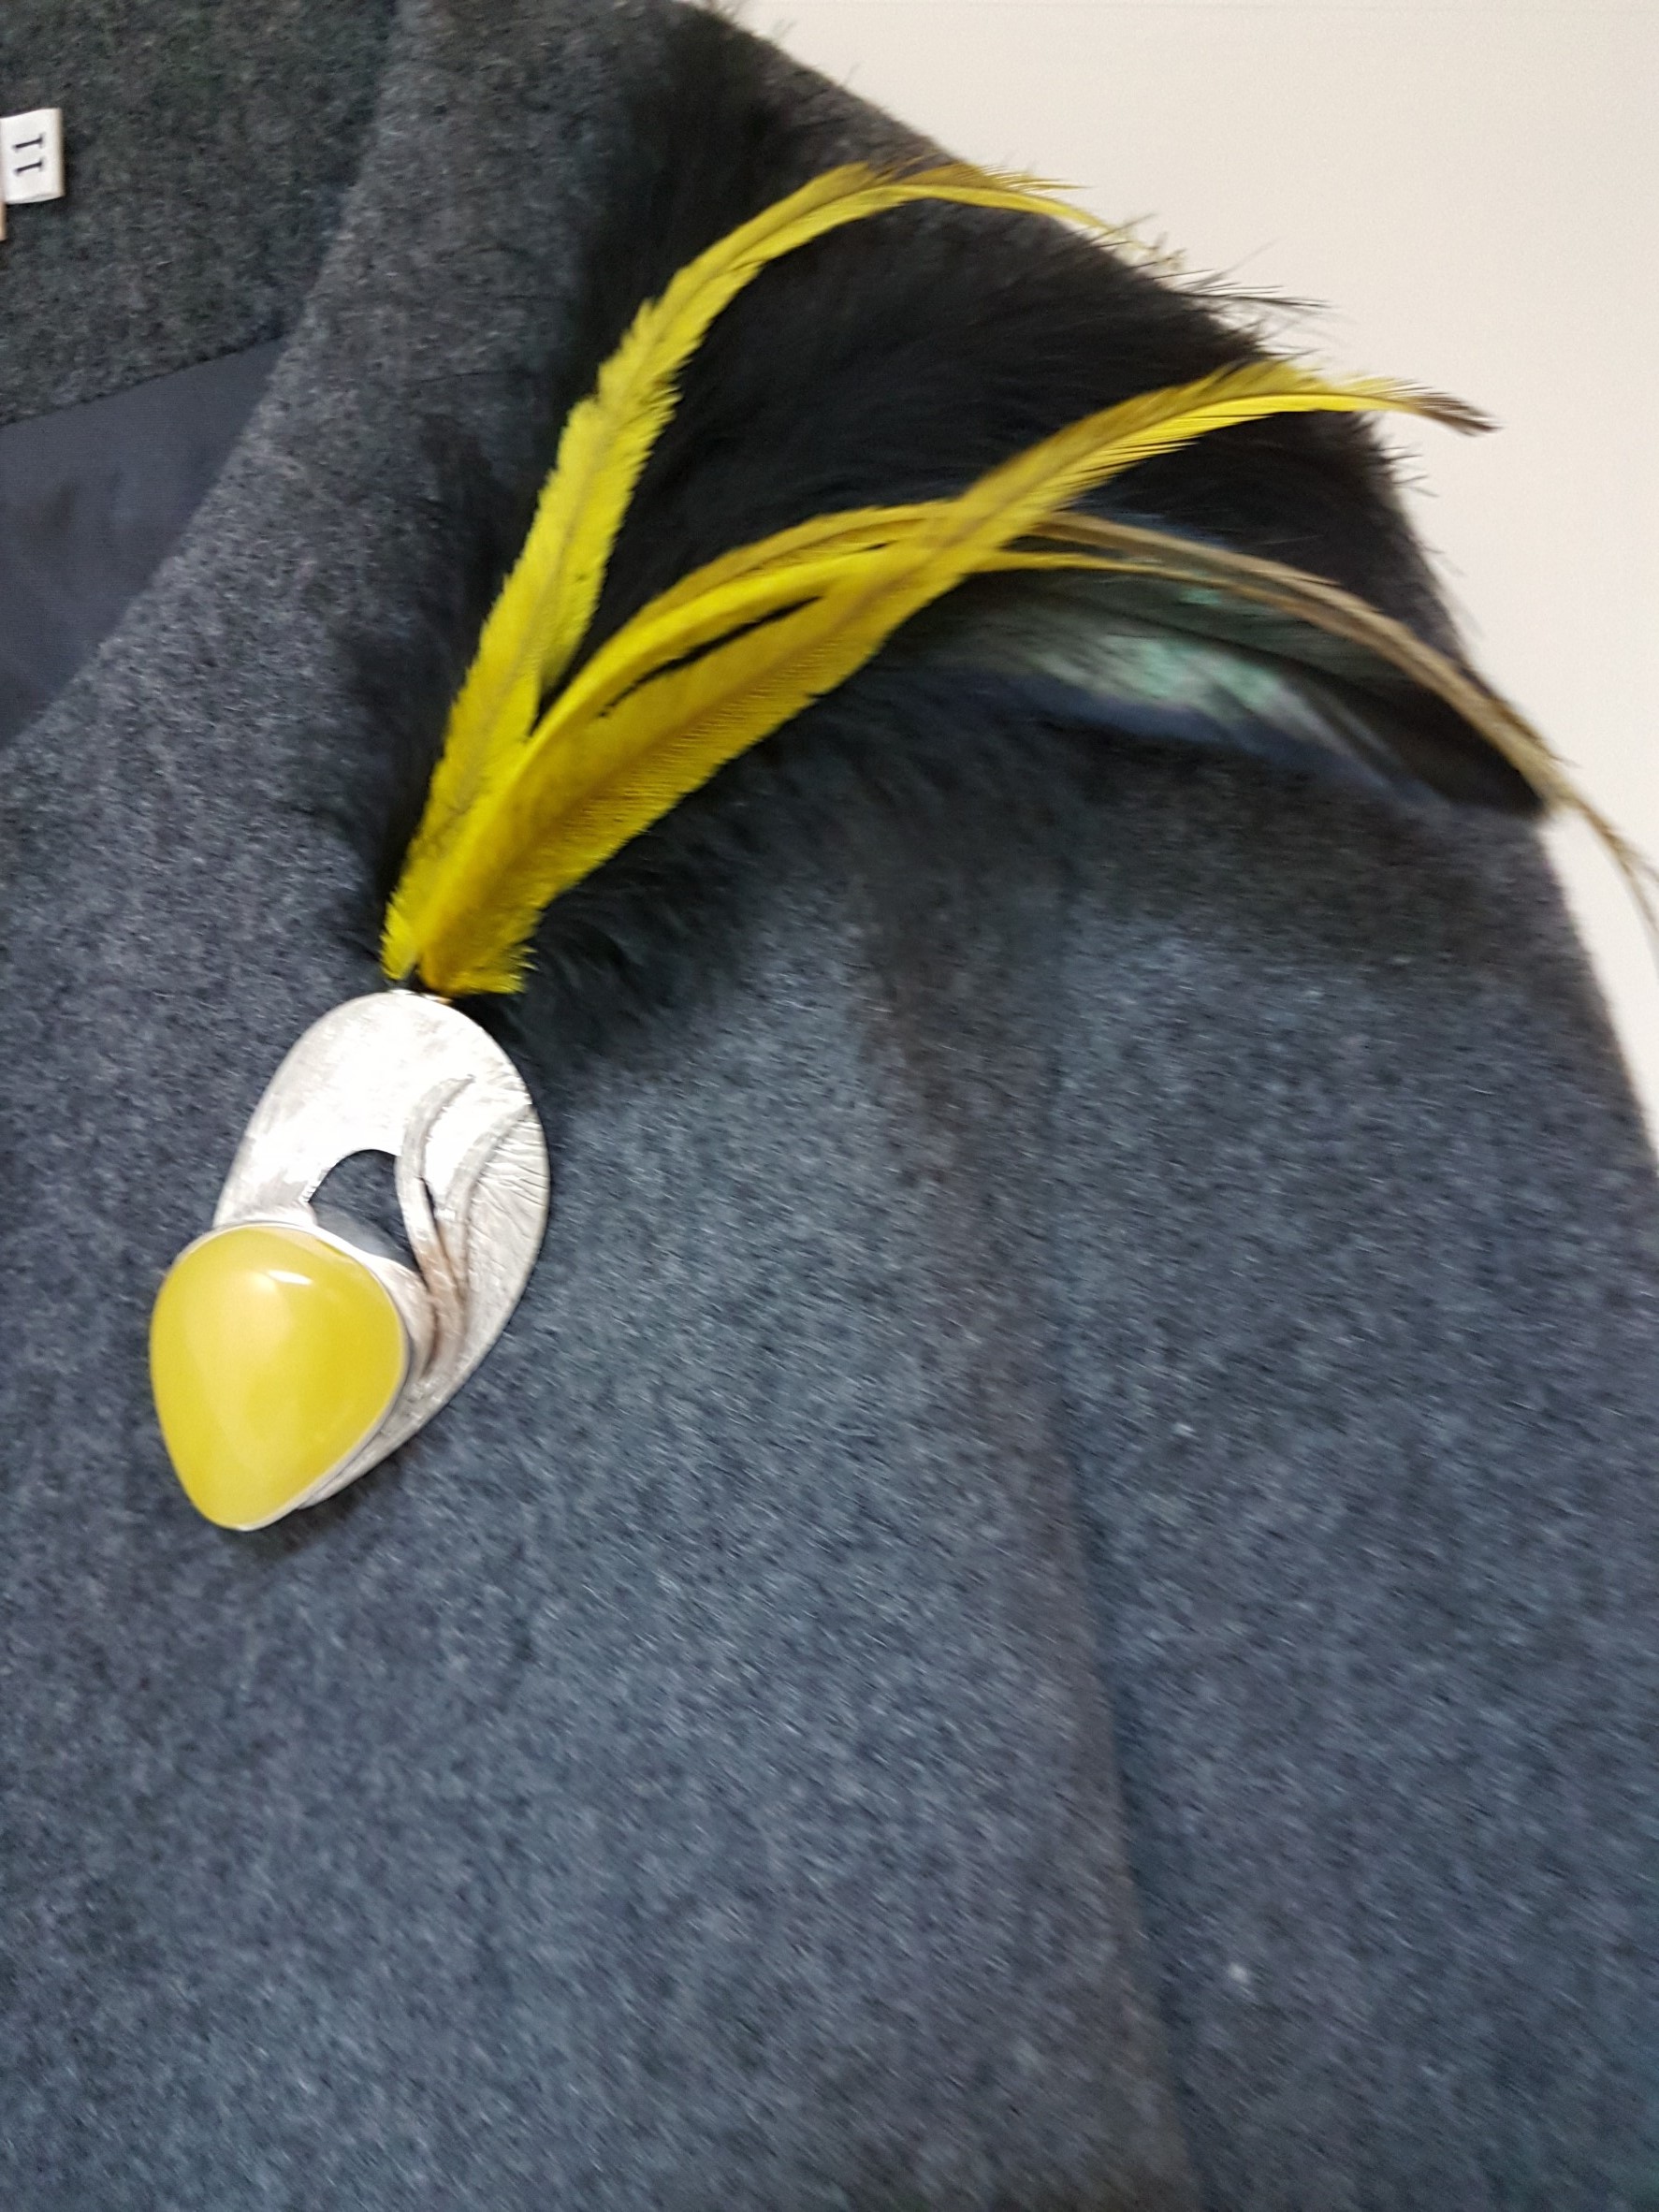 出自波蘭著名的琥珀藝術設計創作人之作品.將精選的琥珀鑲崁與銀飾工藝設計結合並以獨特的黃色及黑色羽毛搭配出獨特的創意飾品-胸針與項鍊二用飾品